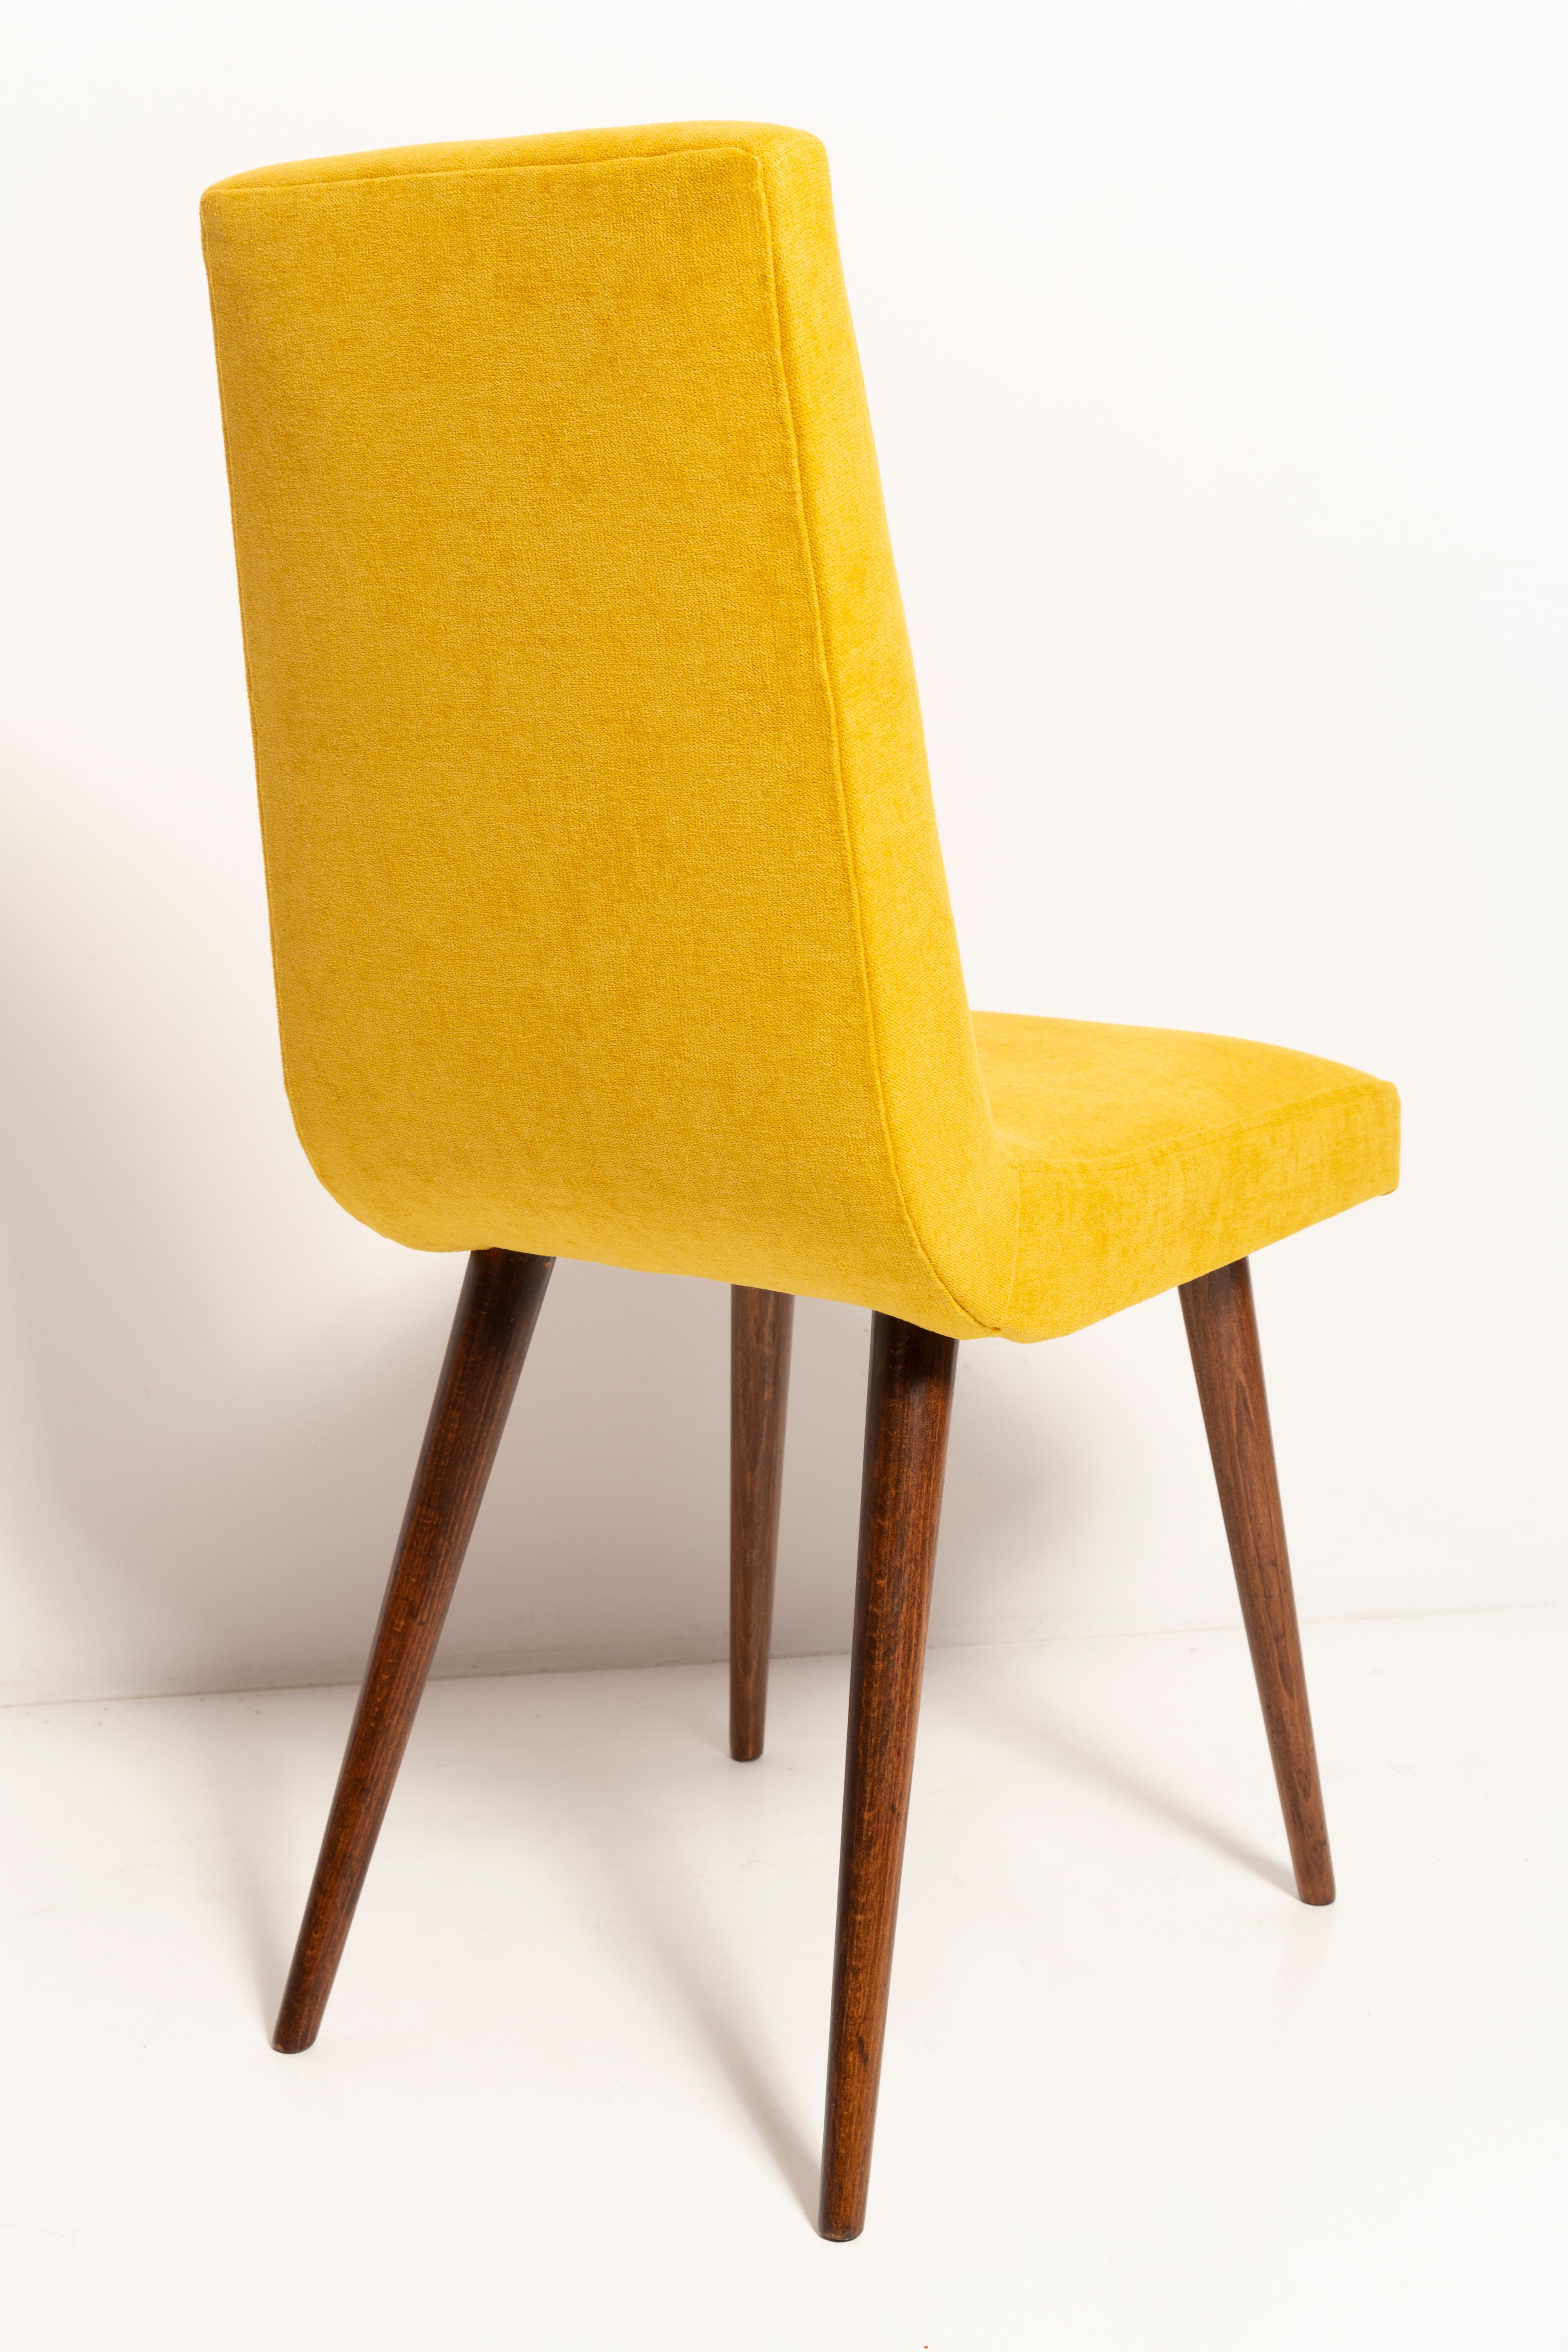 20th Century Mustard Yellow Wool Chair, Rajmund Halas, Europe, 1960s In Excellent Condition For Sale In 05-080 Hornowek, PL